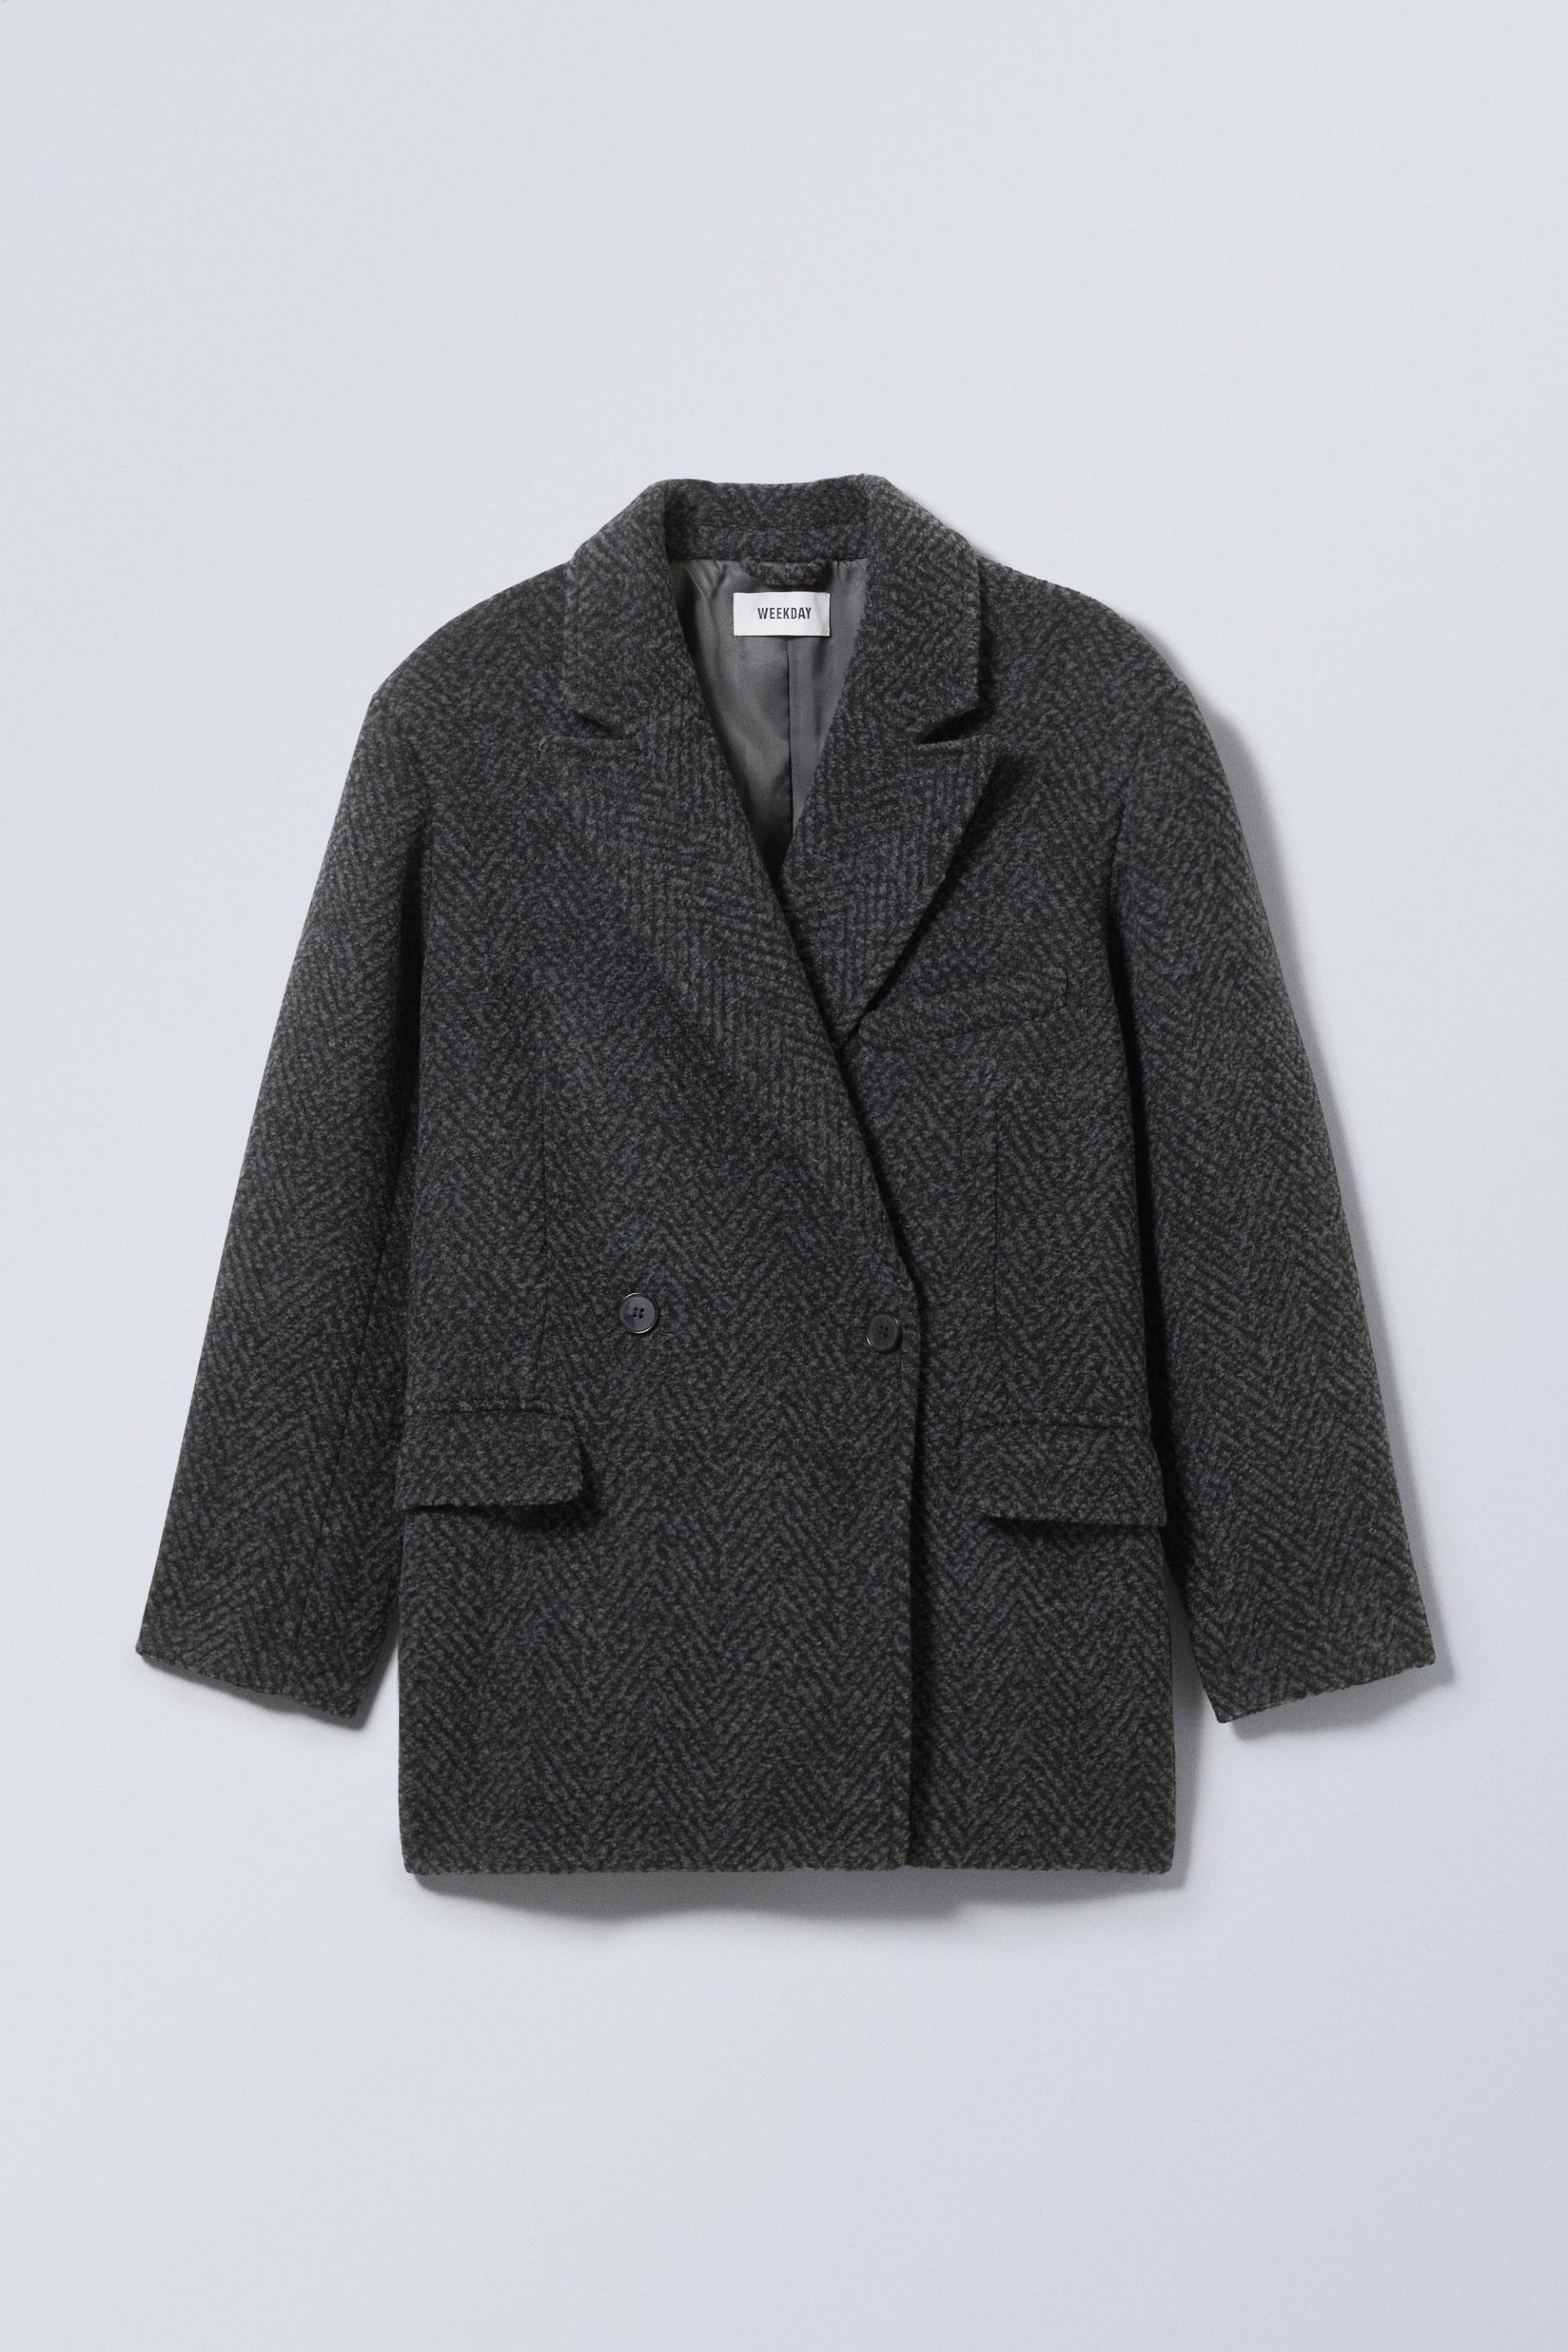 Weekday Jacke aus Wollmischung Carla Grau/Fischgrätmuster, Jacken in Größe 40. Farbe: Grey herringbone von Weekday